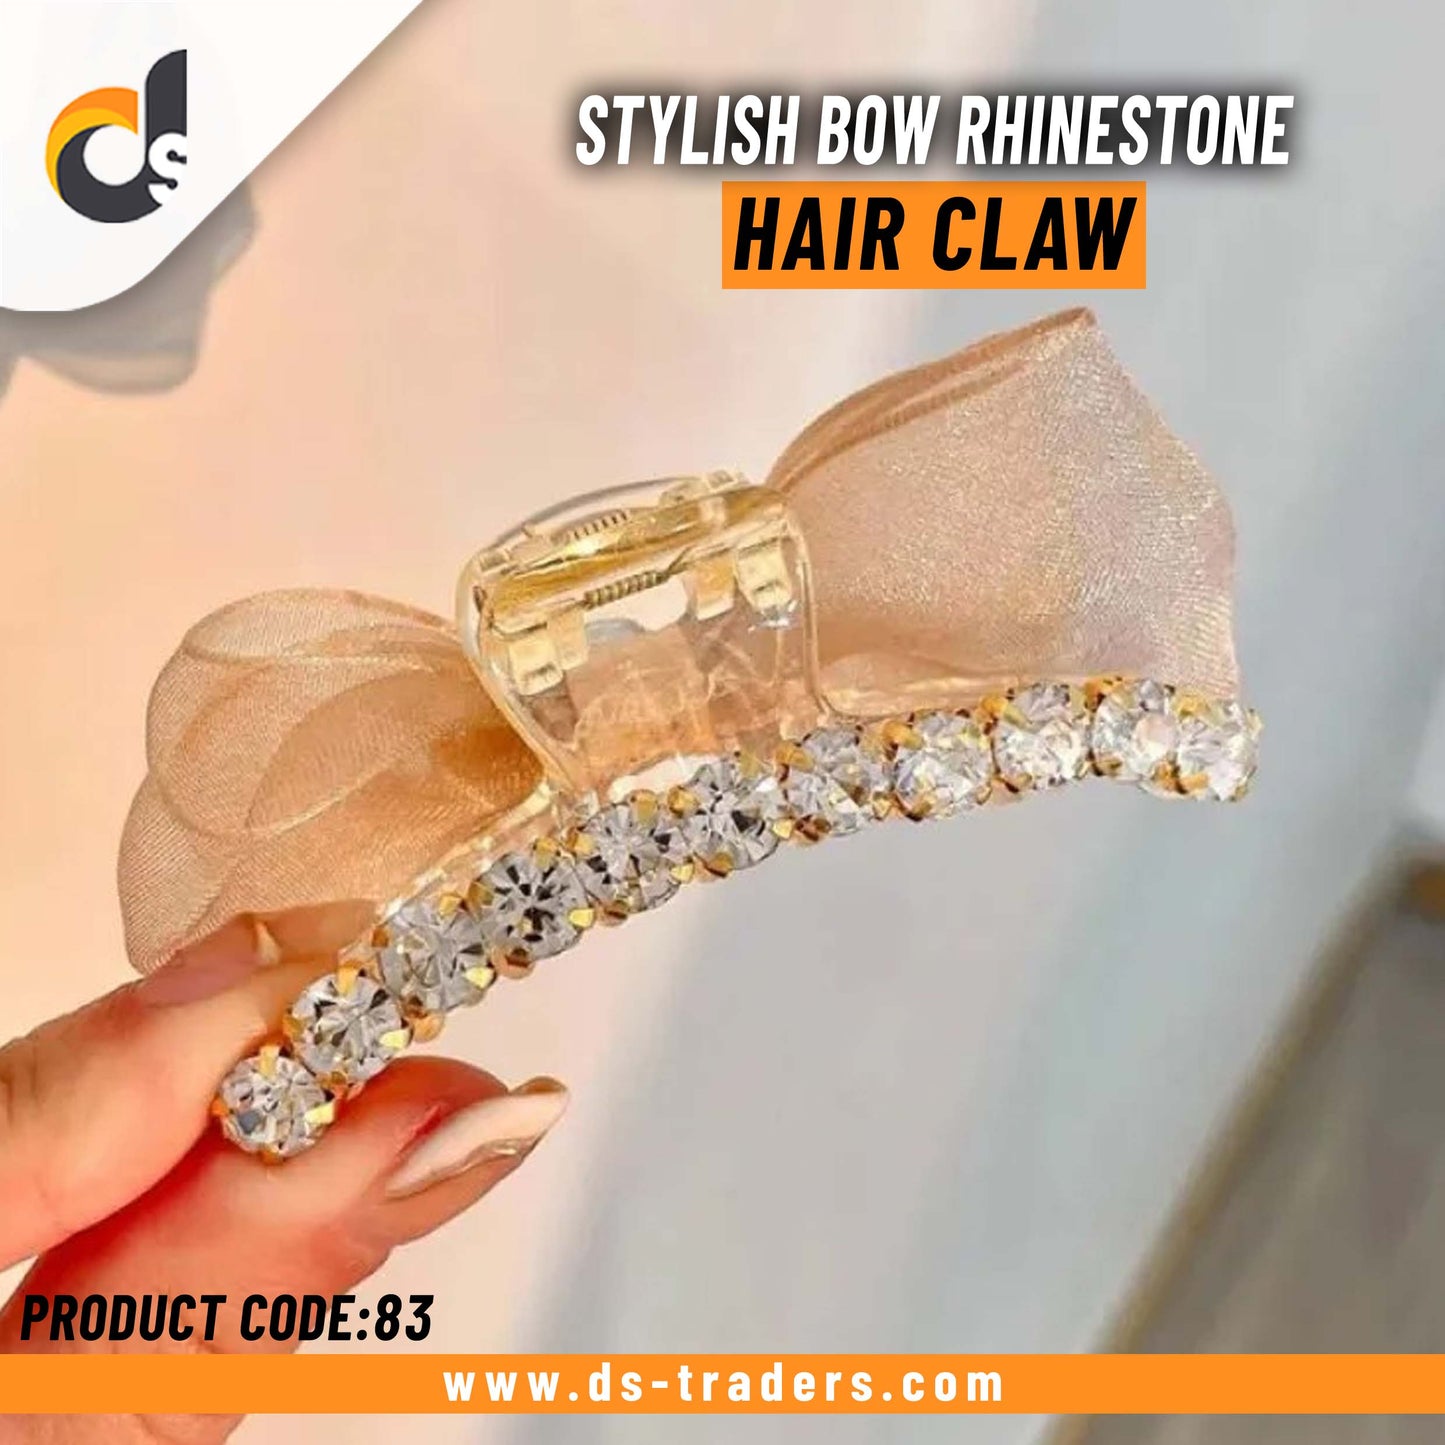 Stylish Bow Rhinestone Hair Claw